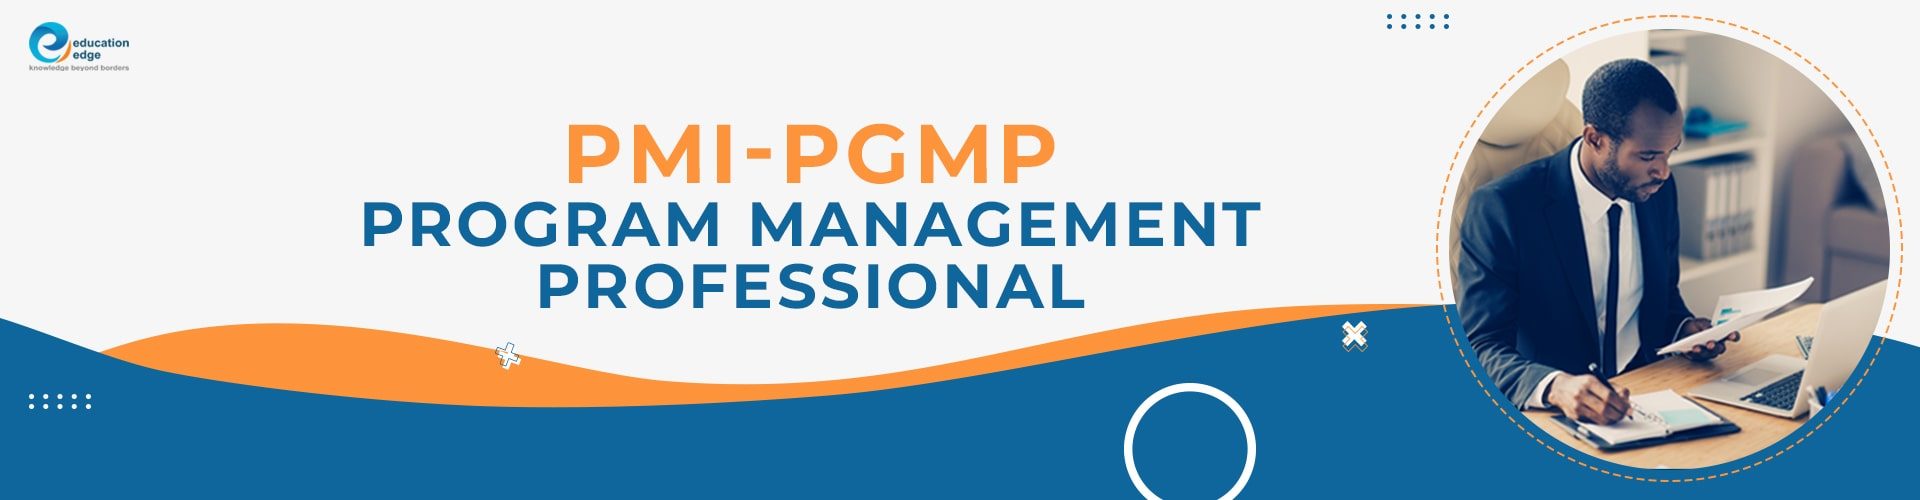 PMI-PgMP Program Management Professional